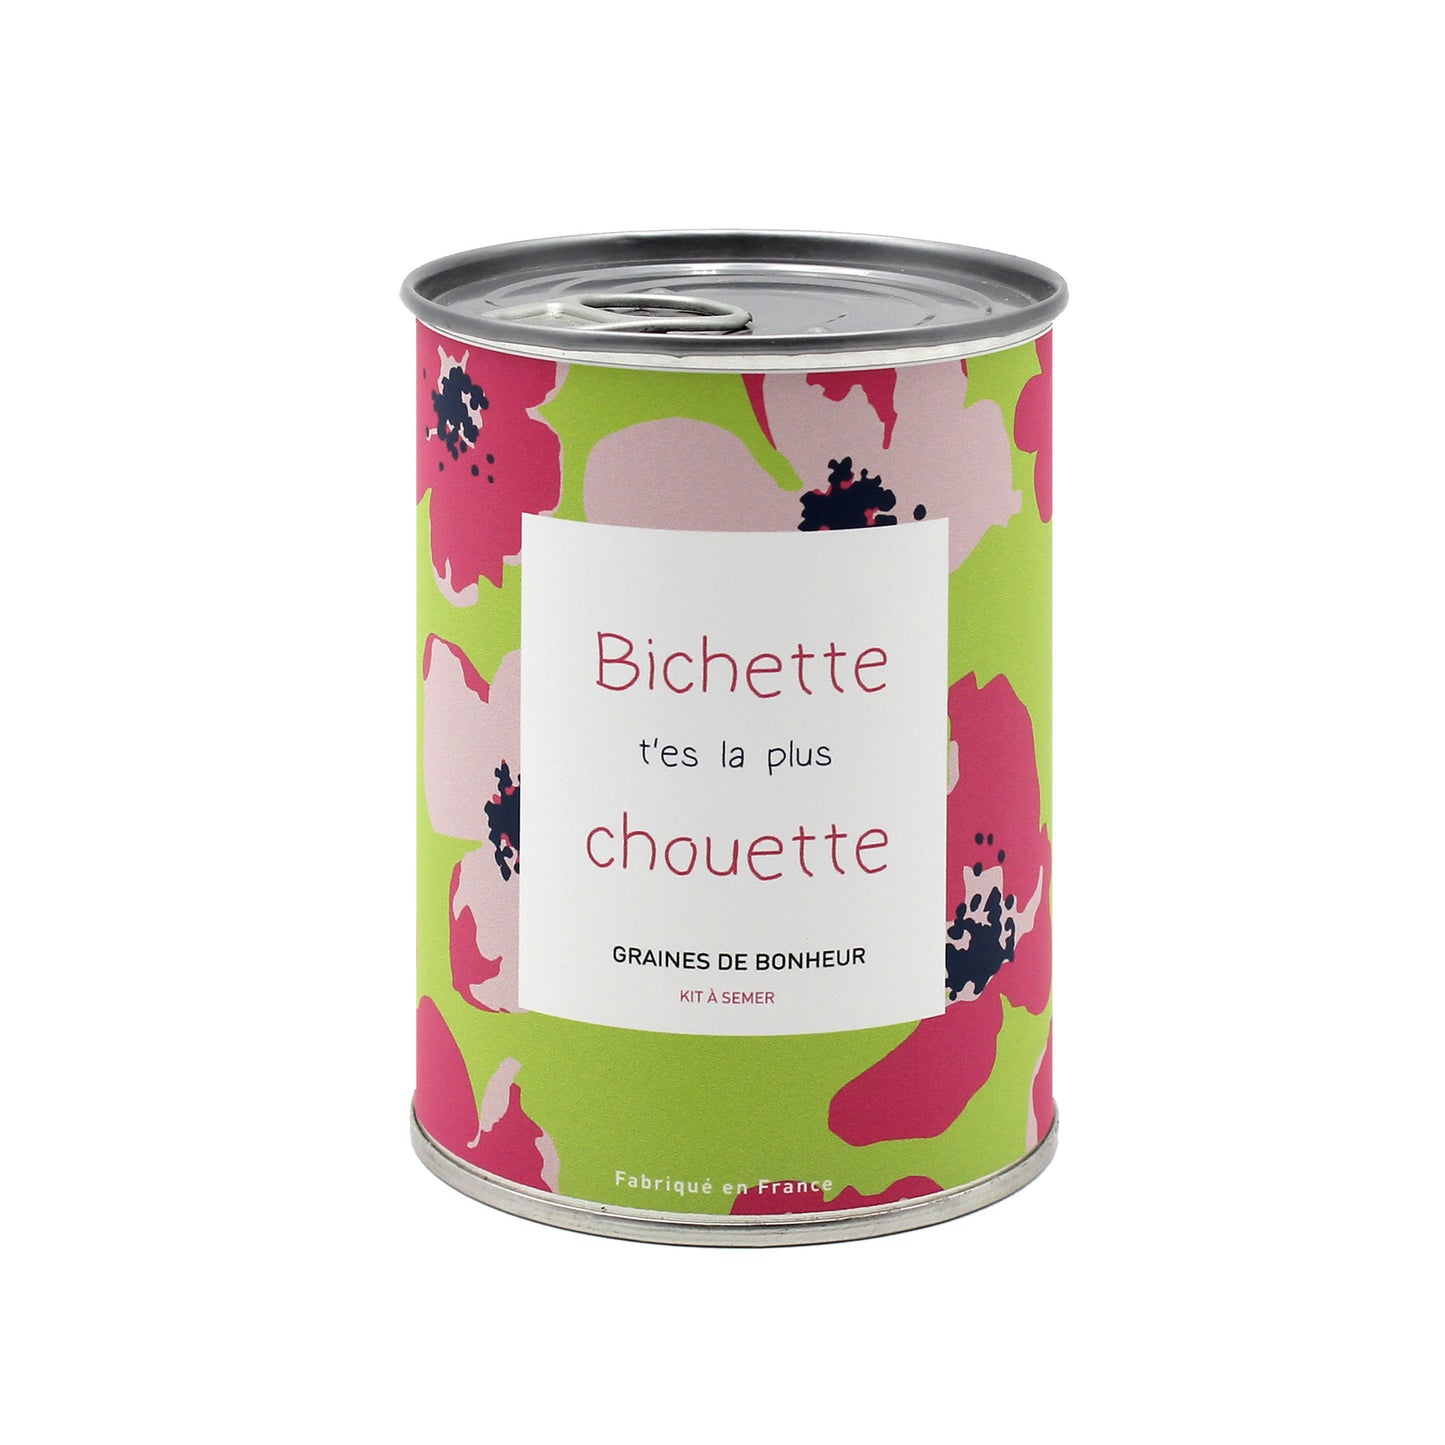 Kit à semer "Bichette t'es la plus chouette" fabriqué en France